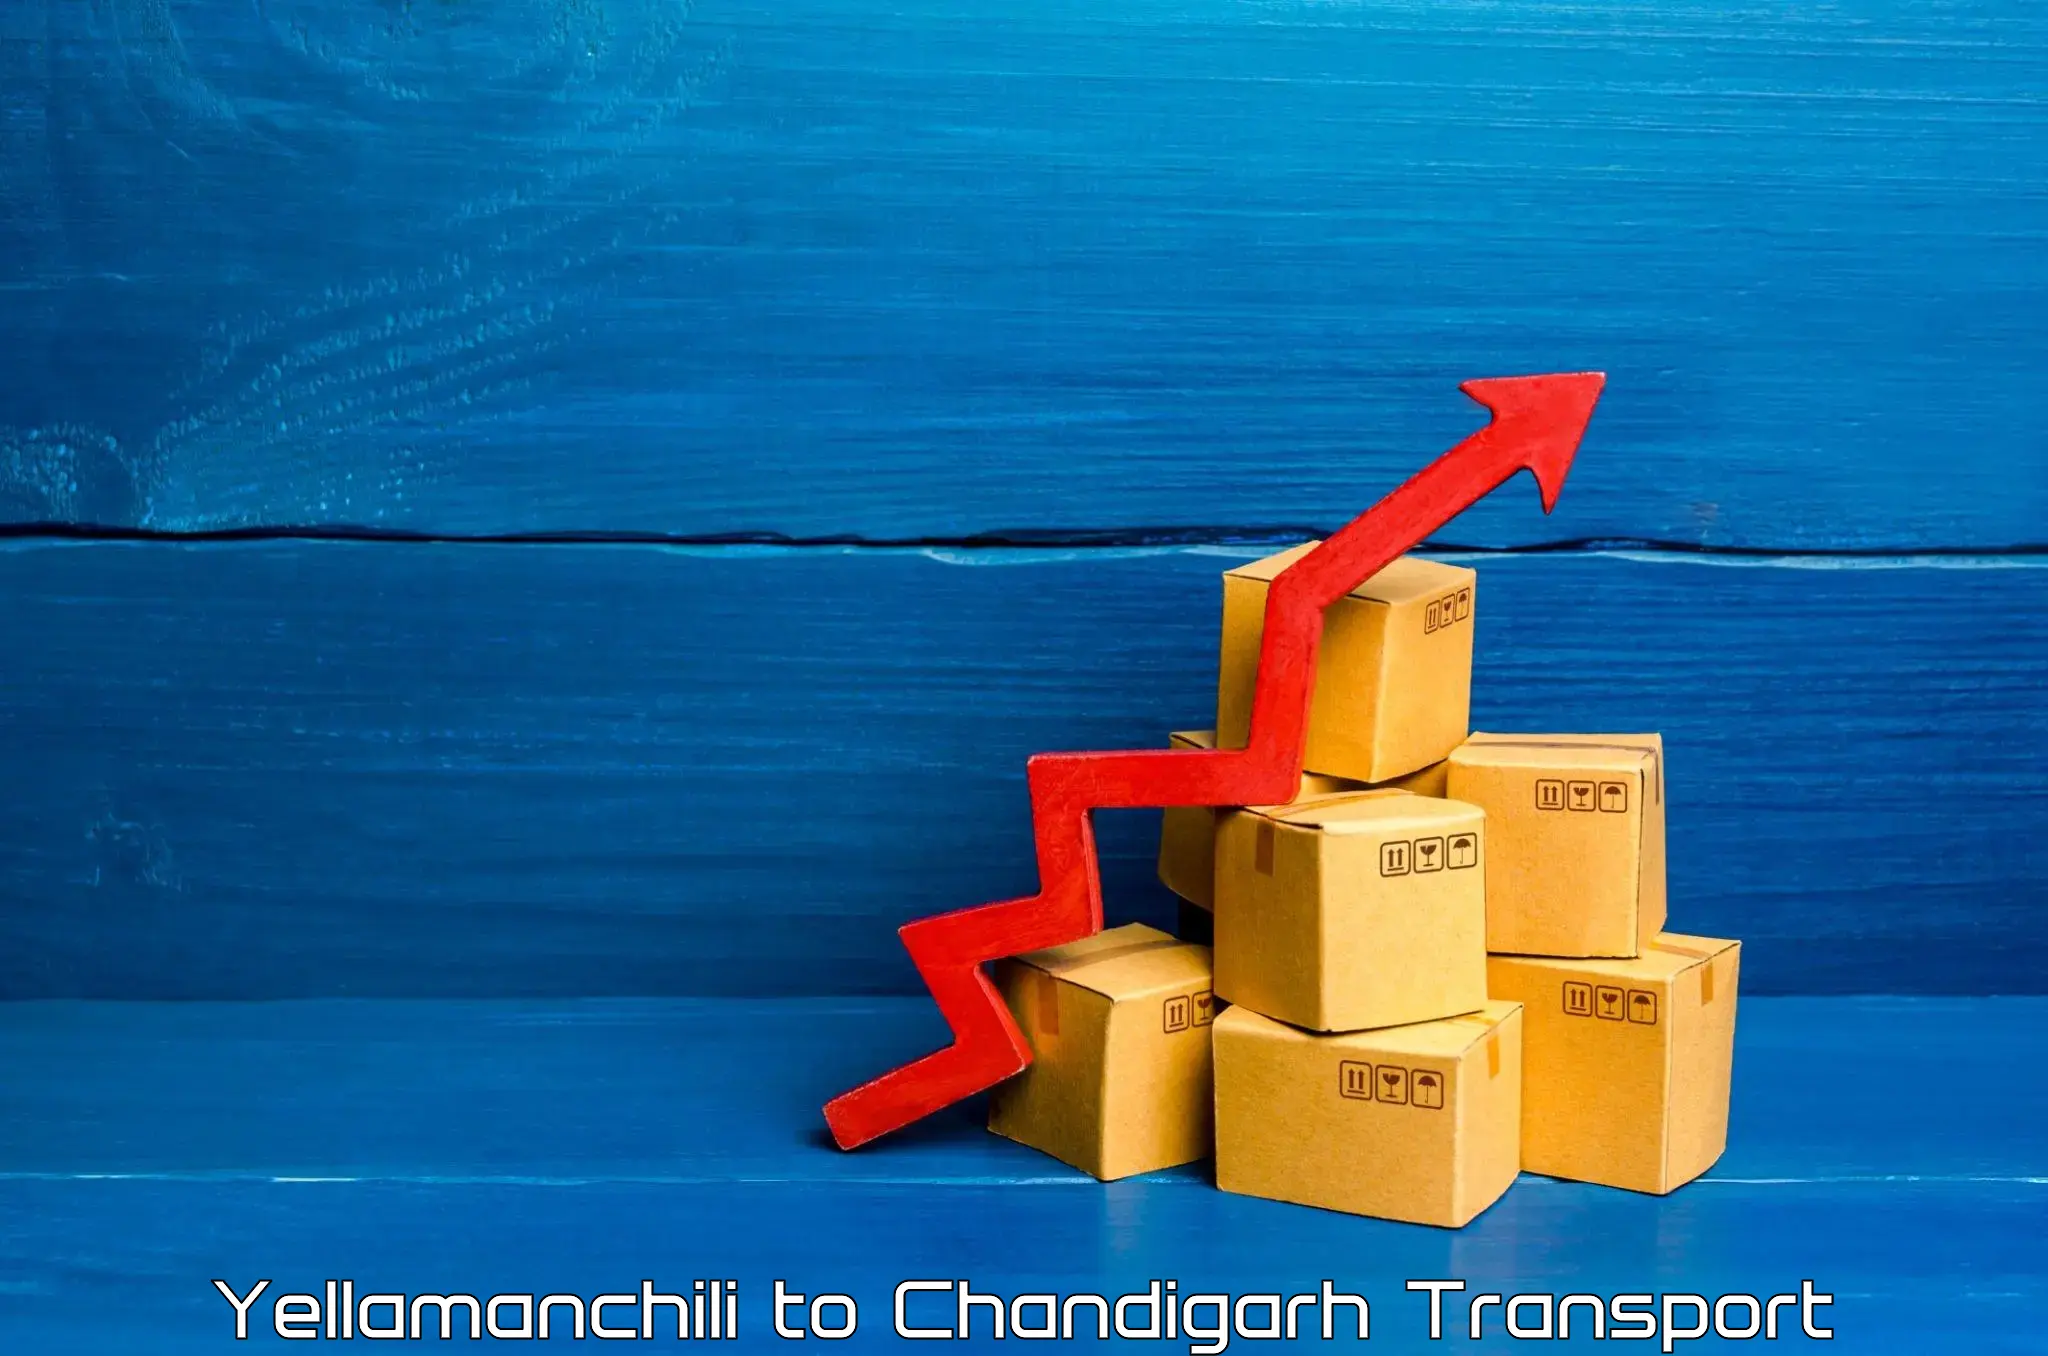 Land transport services Yellamanchili to Chandigarh